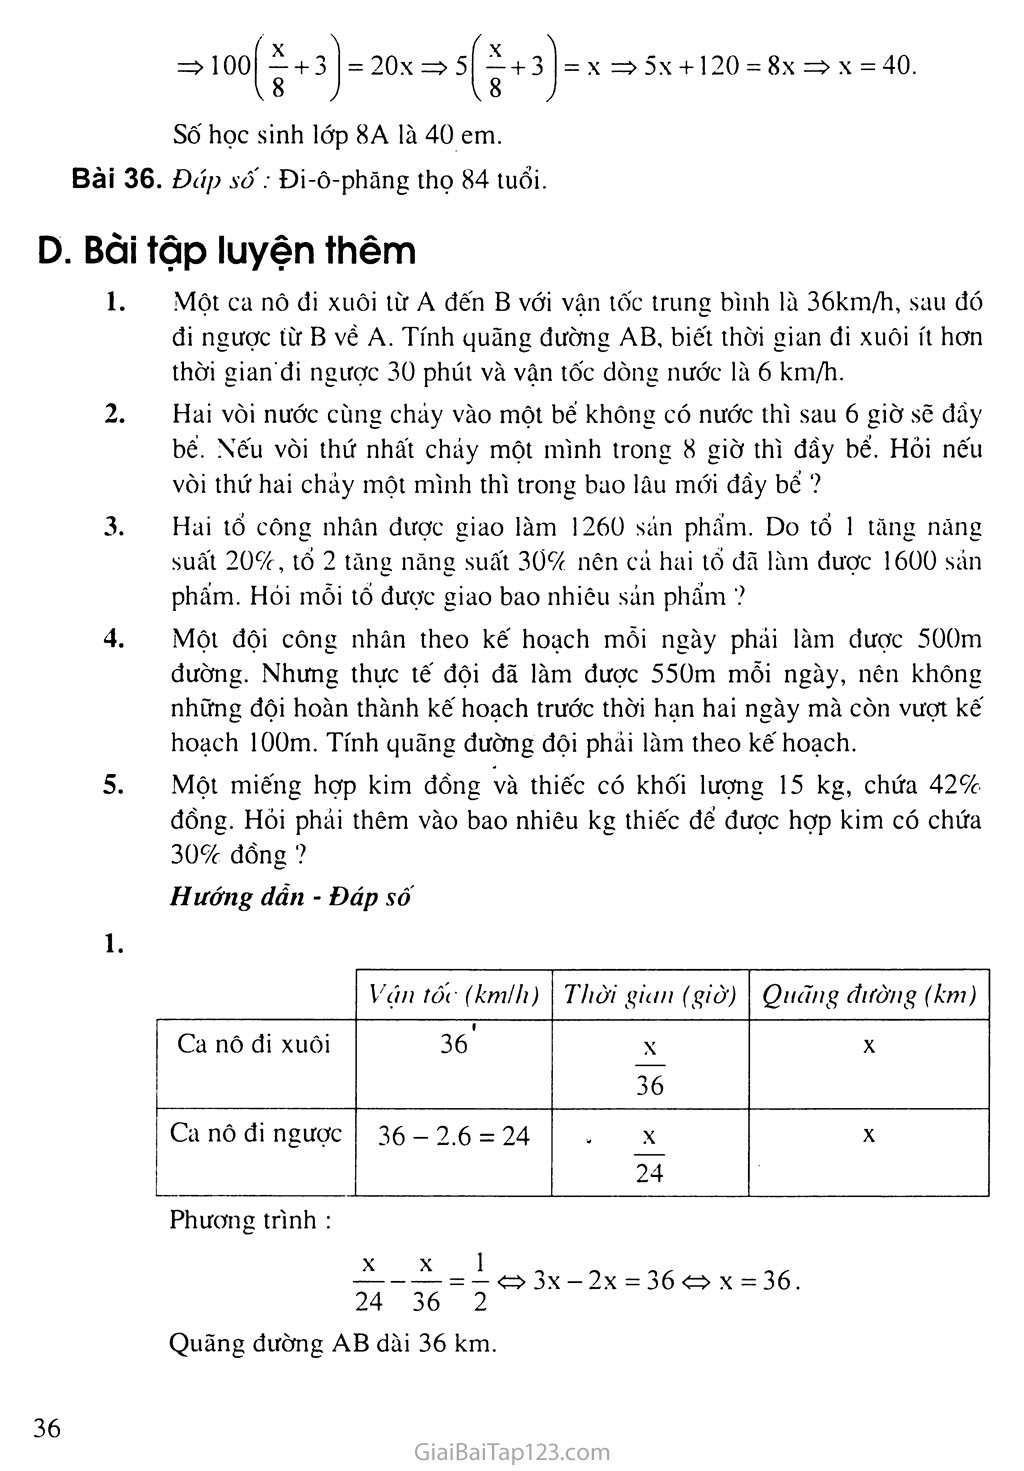 Bài 6. Giải bài toán bằng cách lập phương trình trang 4